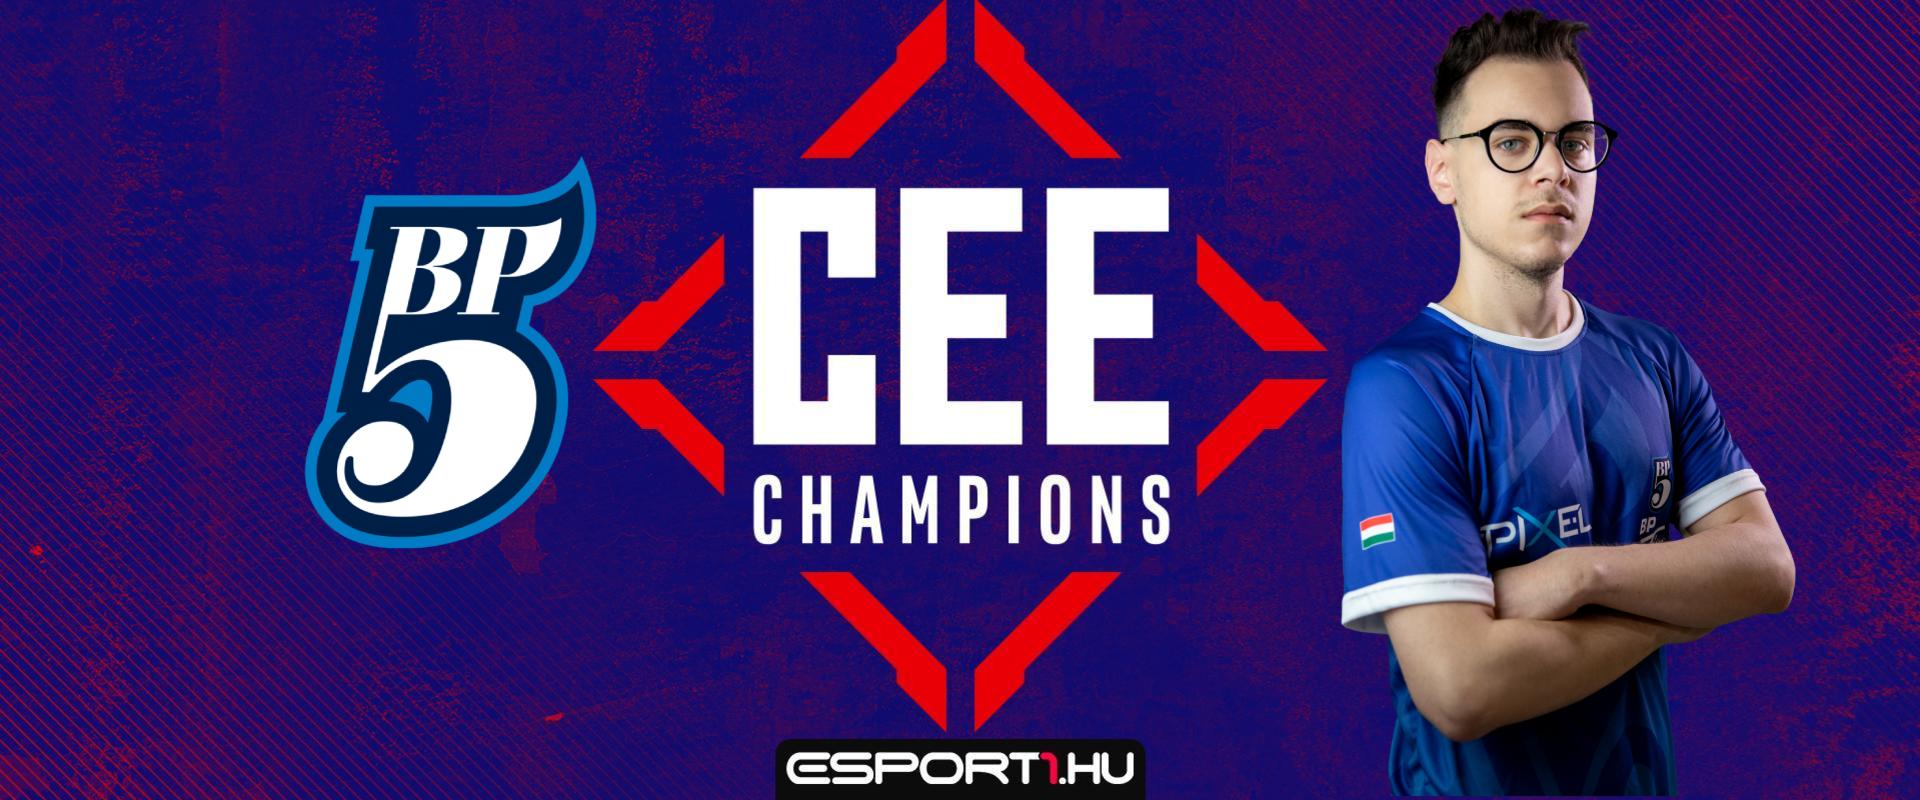 Fleav megunta, őrült teljesítménnyel lőtte be csapatát a CEE Champions rájátszásába